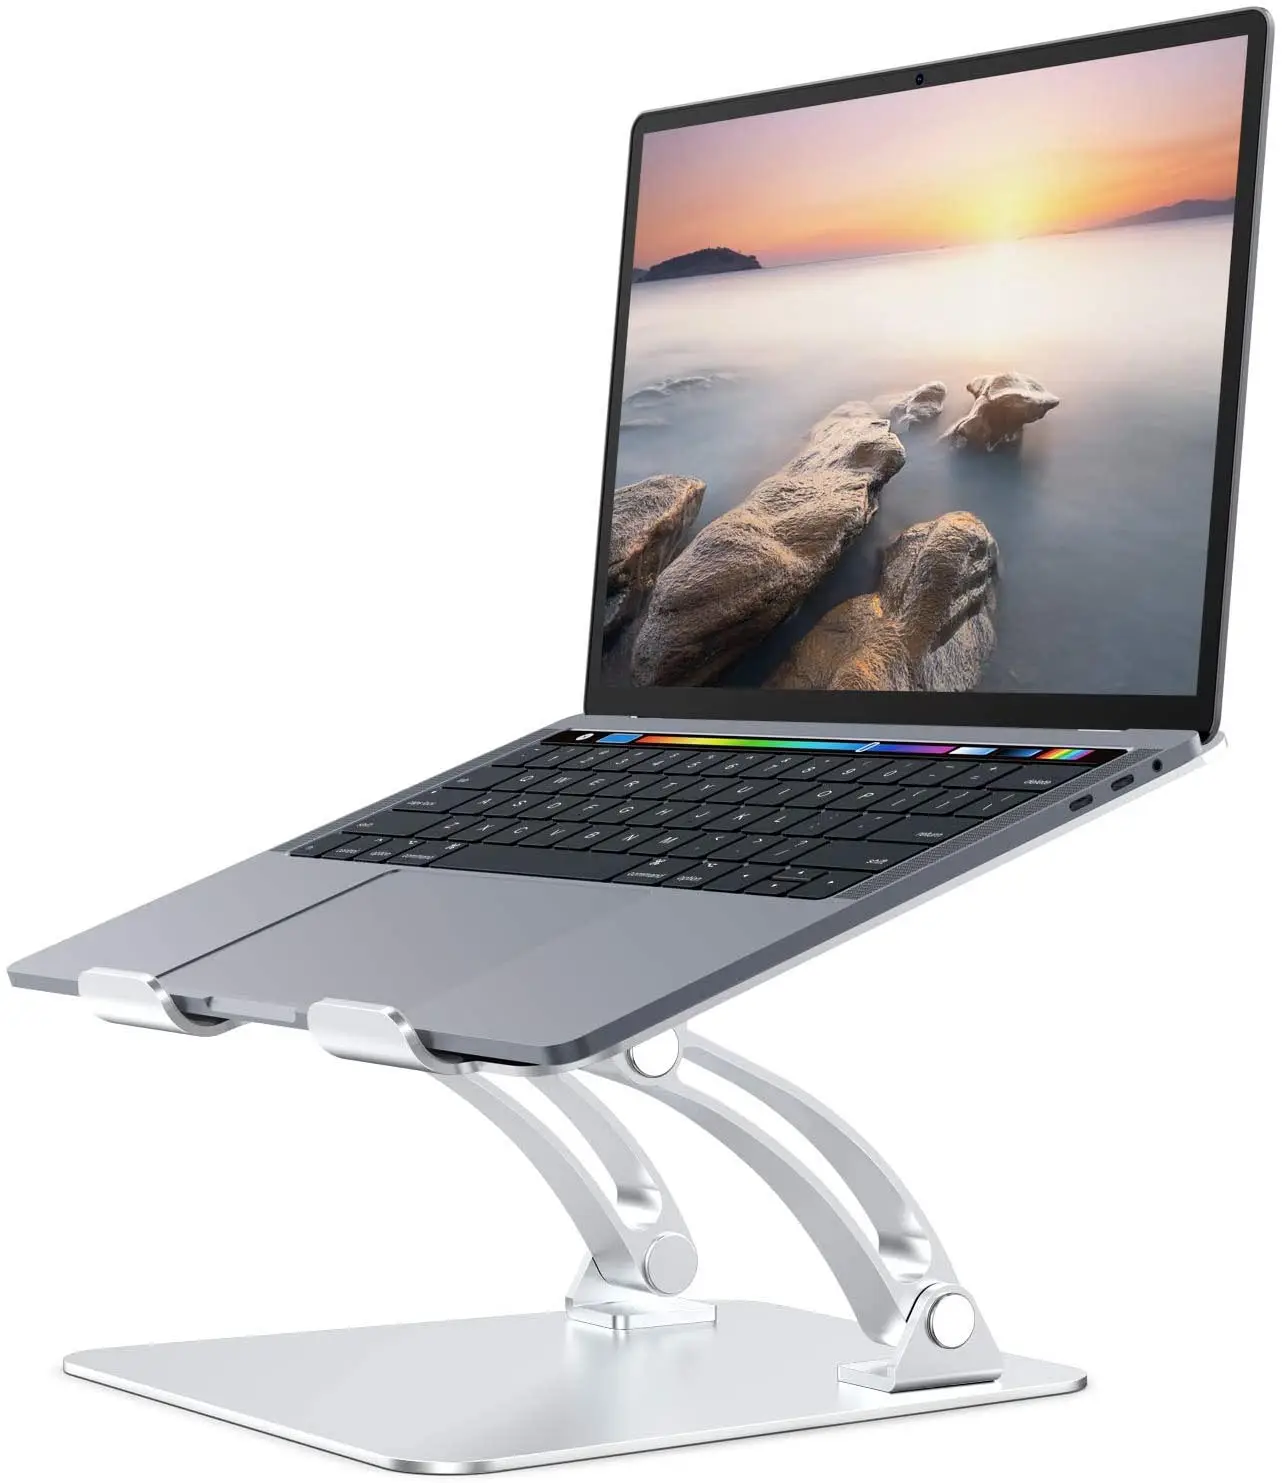 Support pour ordinateur portable en aluminium, pour Apple Macbook Air Macbook Pro et tout ordinateur portable entre 10 et 17 pouces